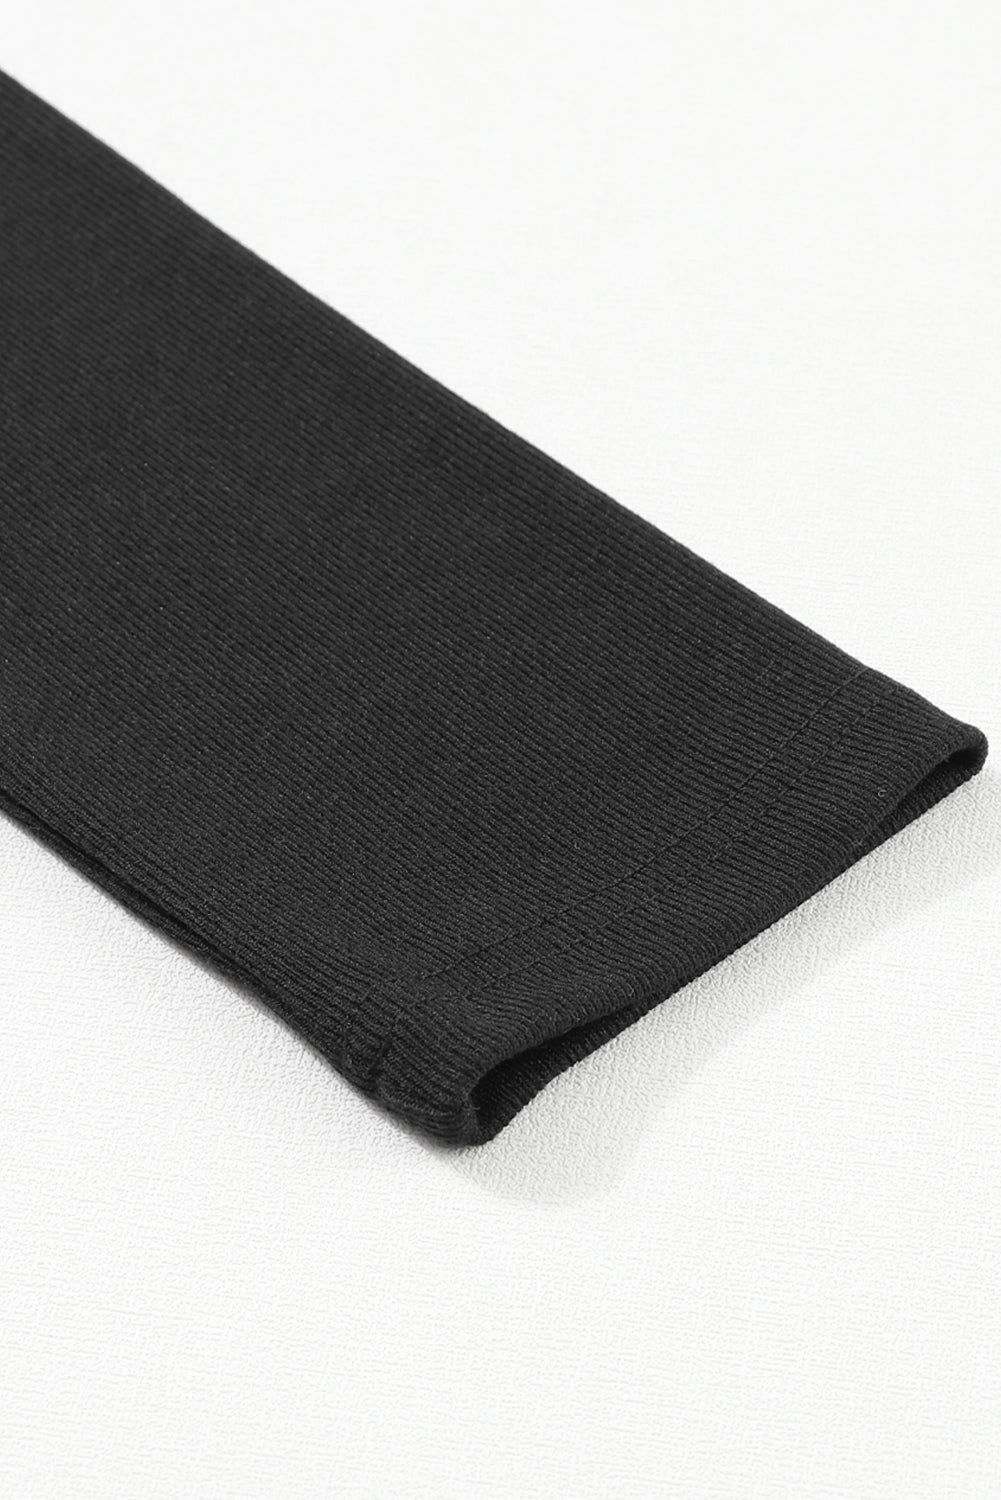 Black Ribbed Peekaboo Cutout Long Sleeve Top